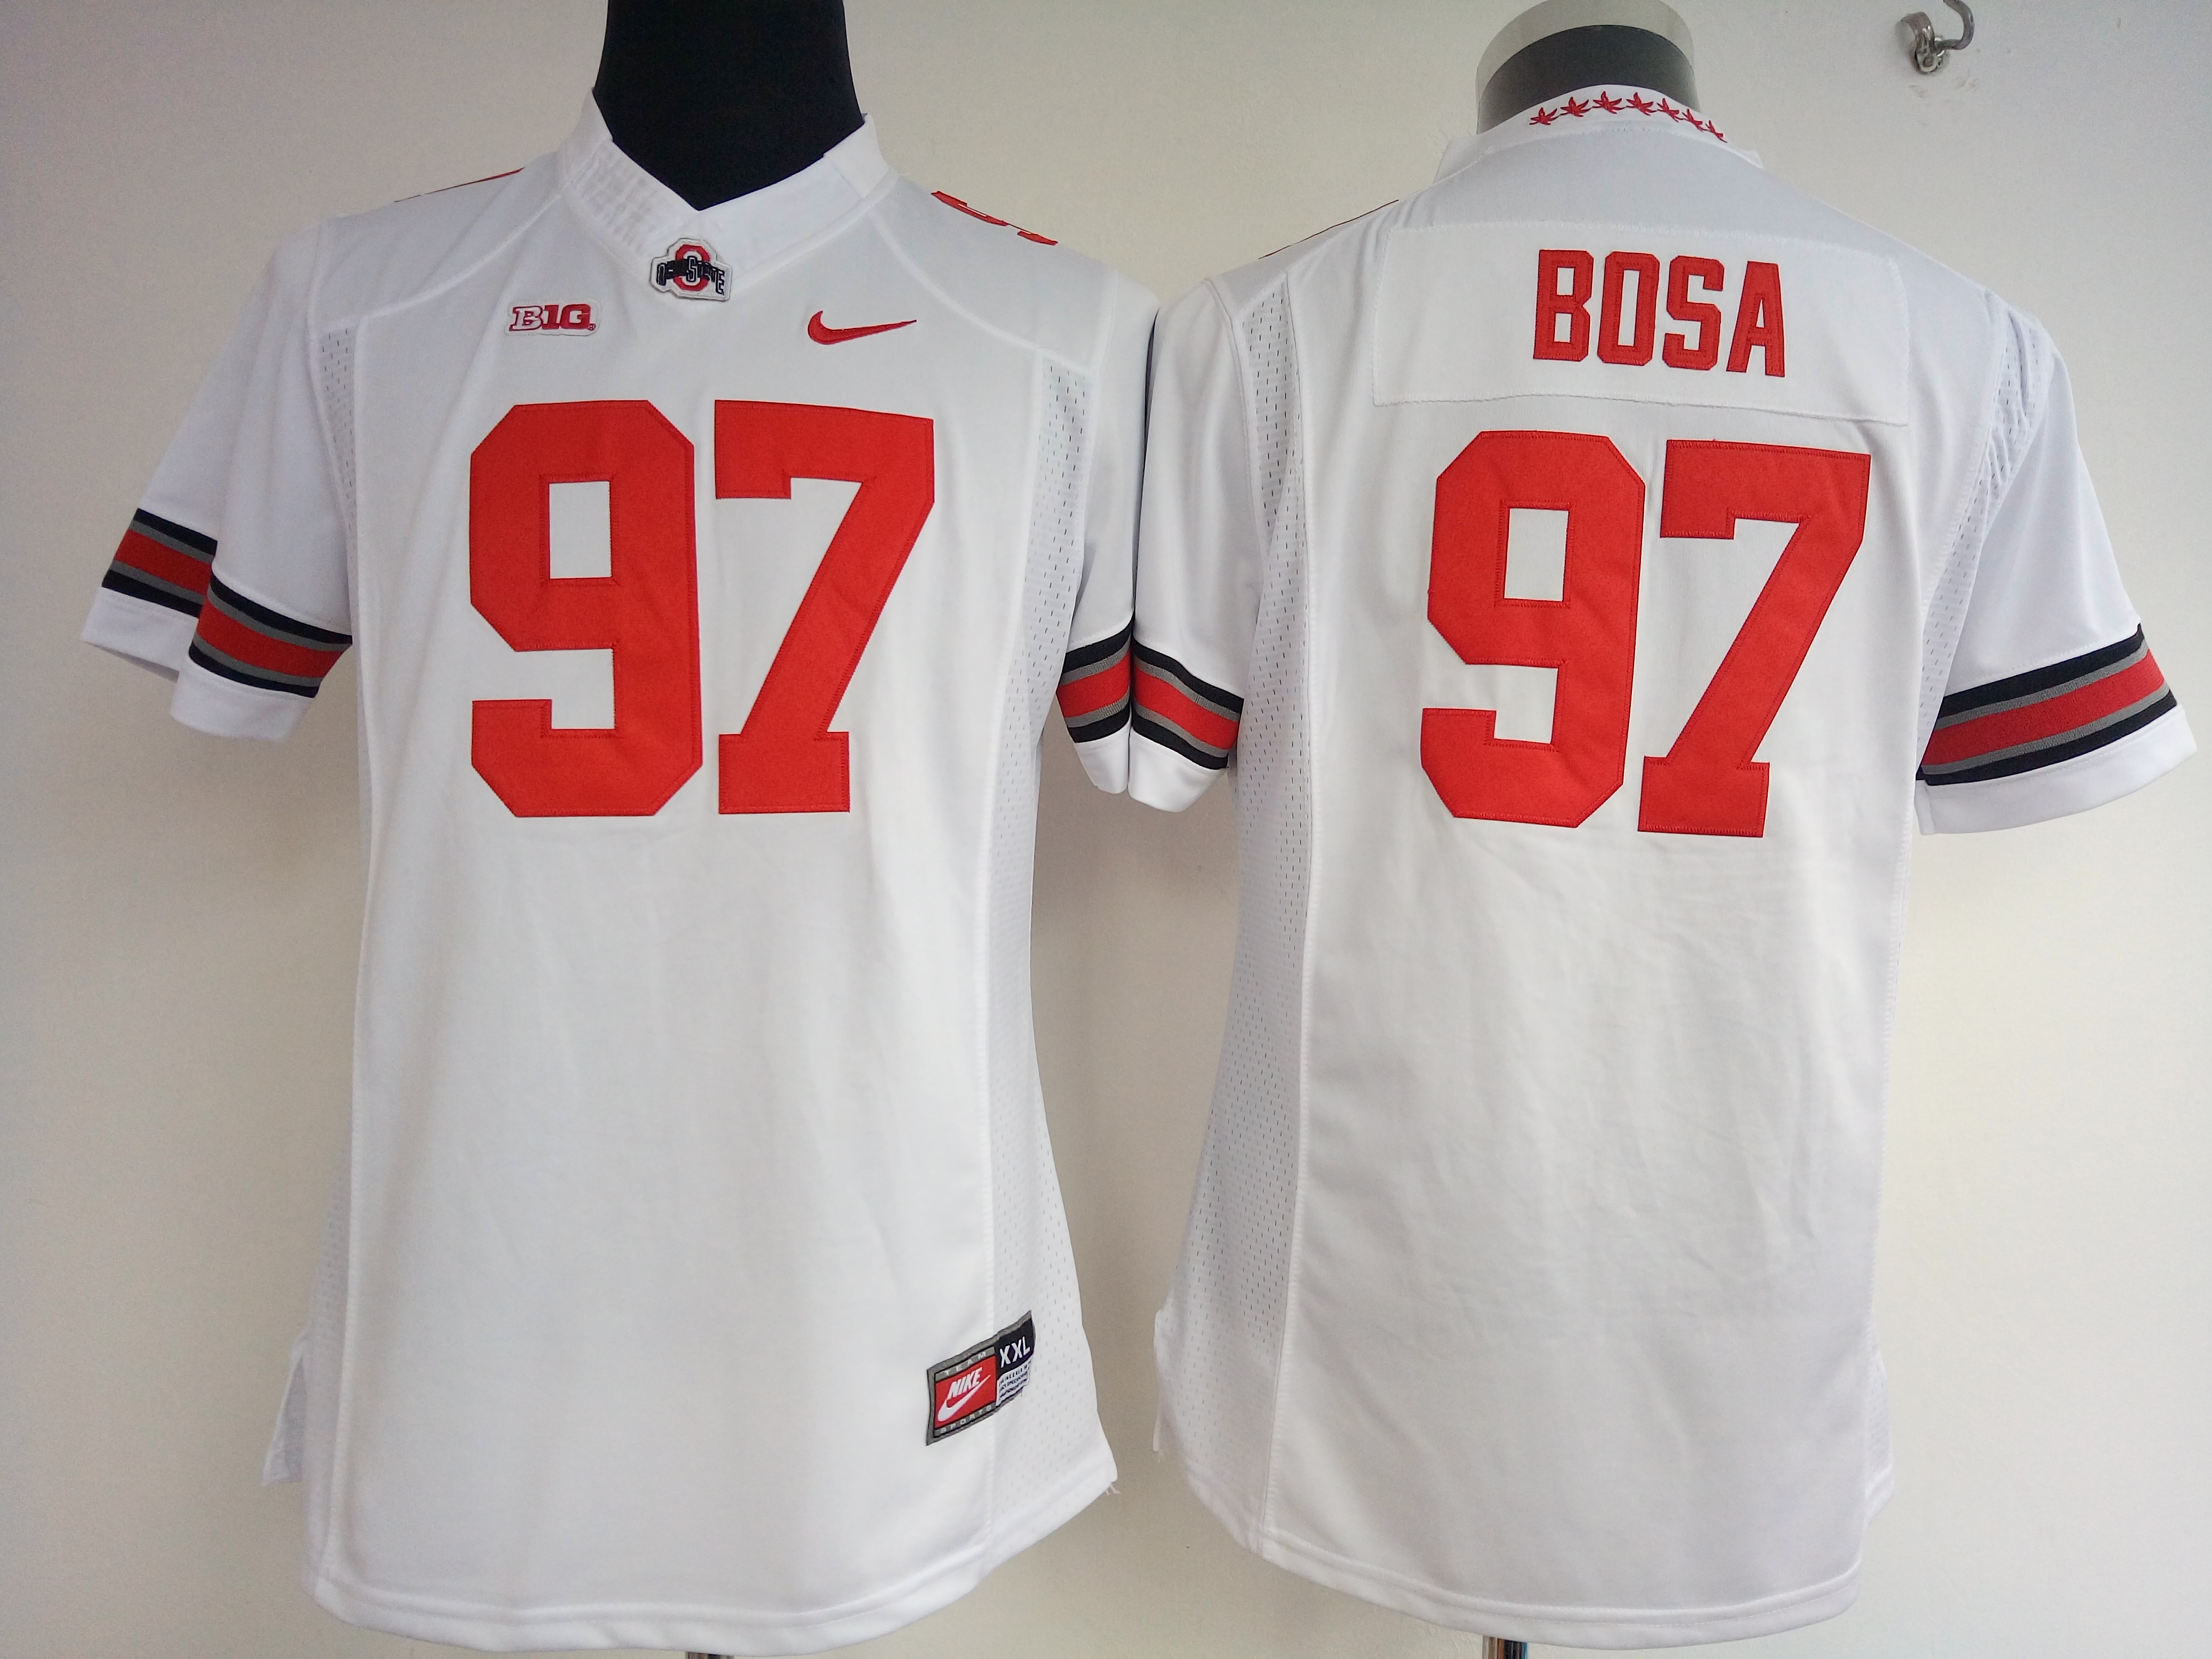 NCAA Womens Ohio State Buckeyes White #97 bosa jerseys->women ncaa jersey->Women Jersey